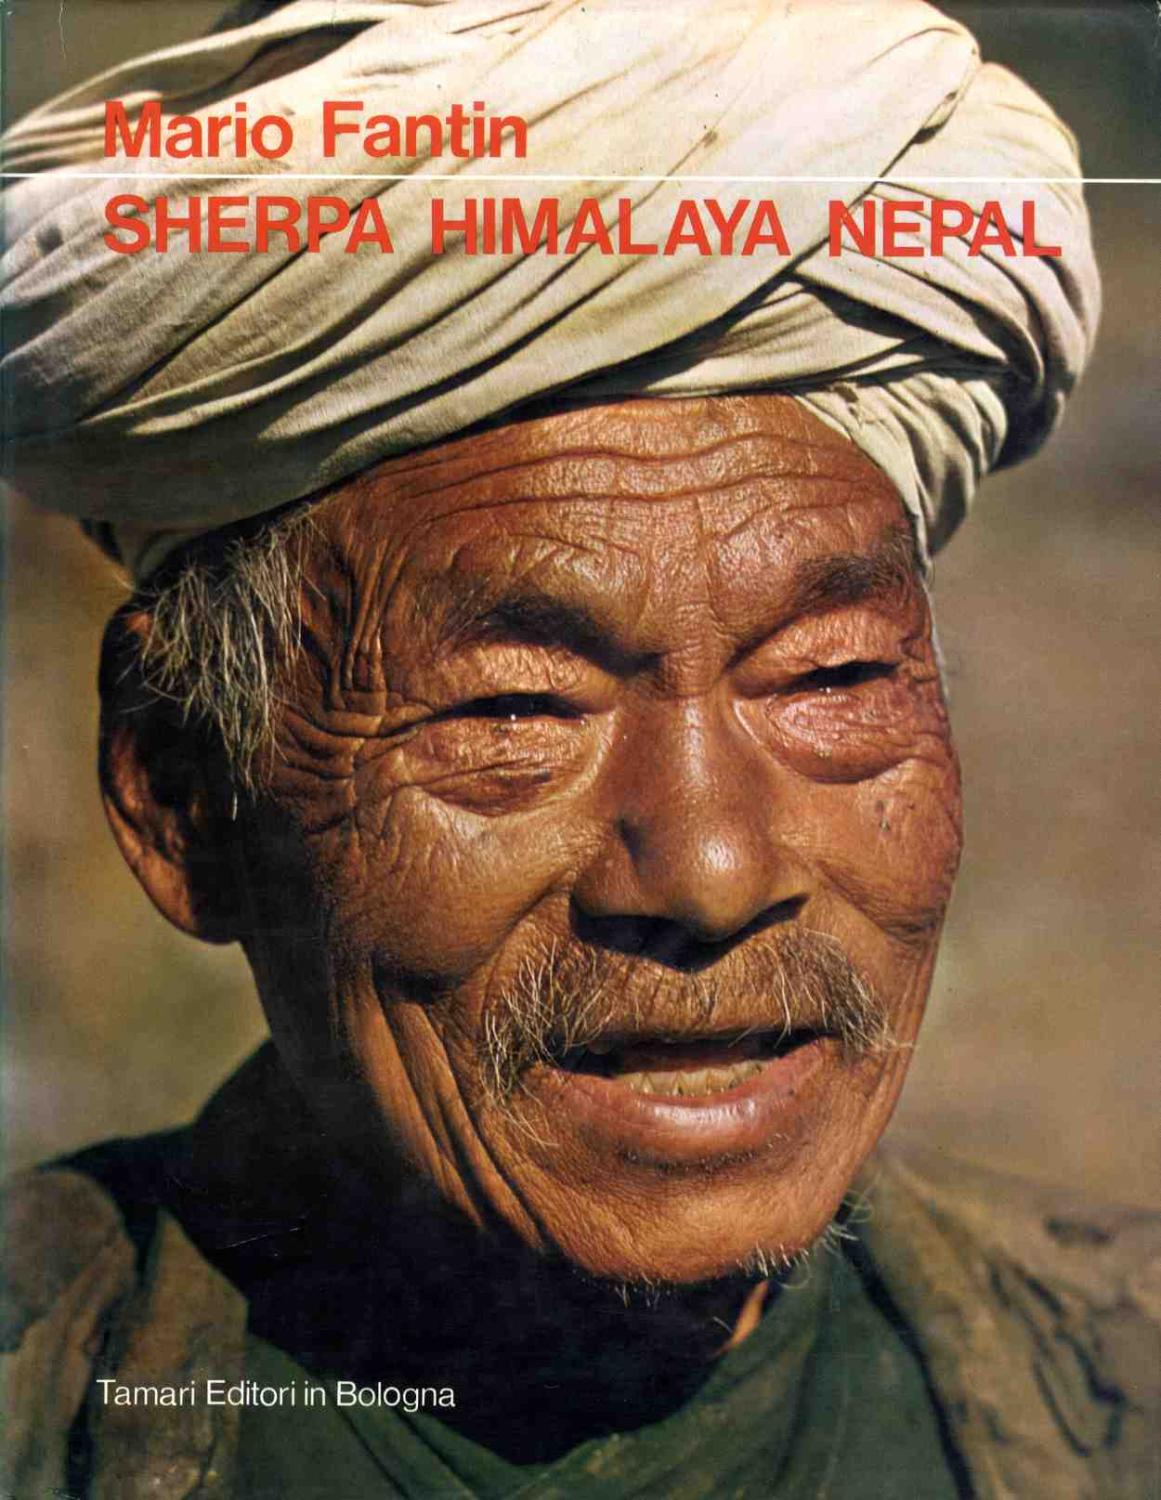 Sherpa Himalaya Nepal.